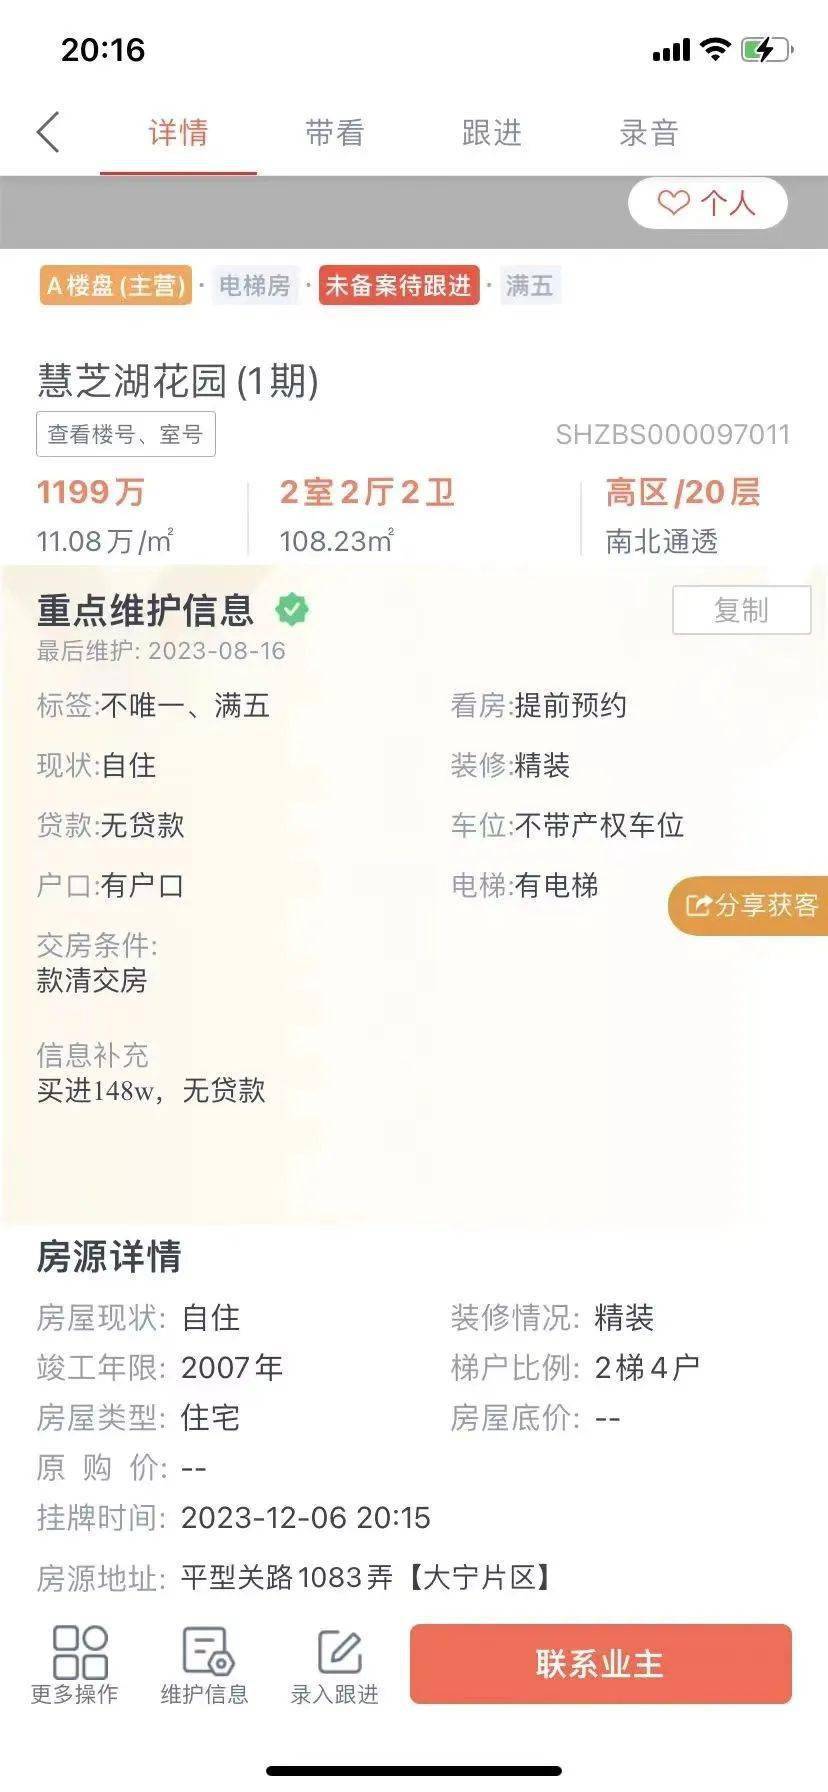 北京二手房业主“不愿降价卖了”，上海有豪宅板块成交“疯了”……探访京沪楼市新政首个周末